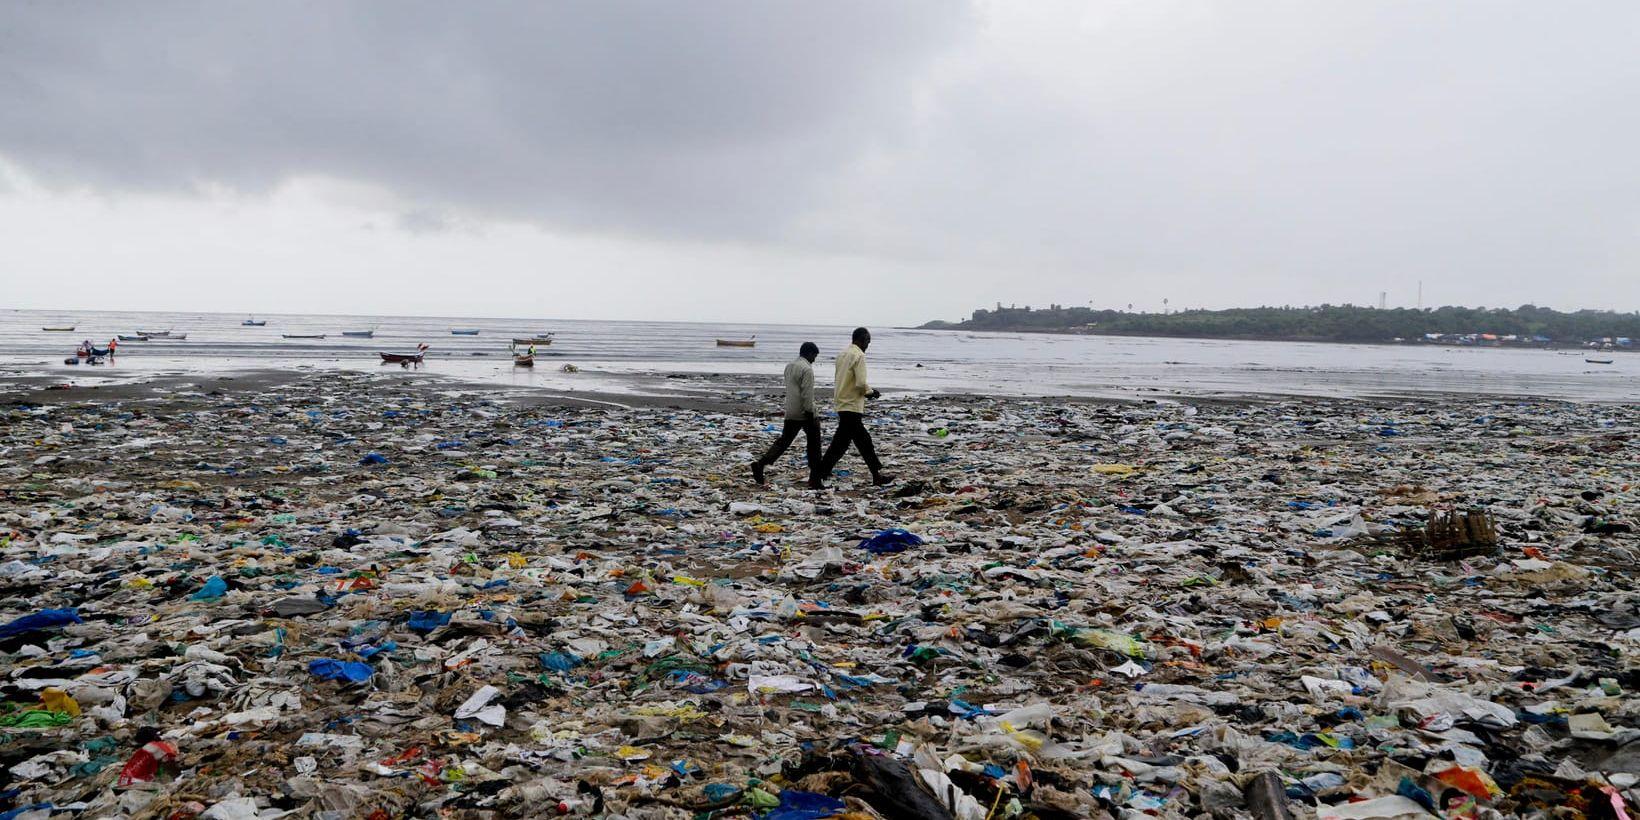 Om nuvarande föroreningshastighet fortsätter kommer det att finnas mer plast än fisk i haven år 2050, uppger FN:s miljöprogram Unep. Arkivbild.